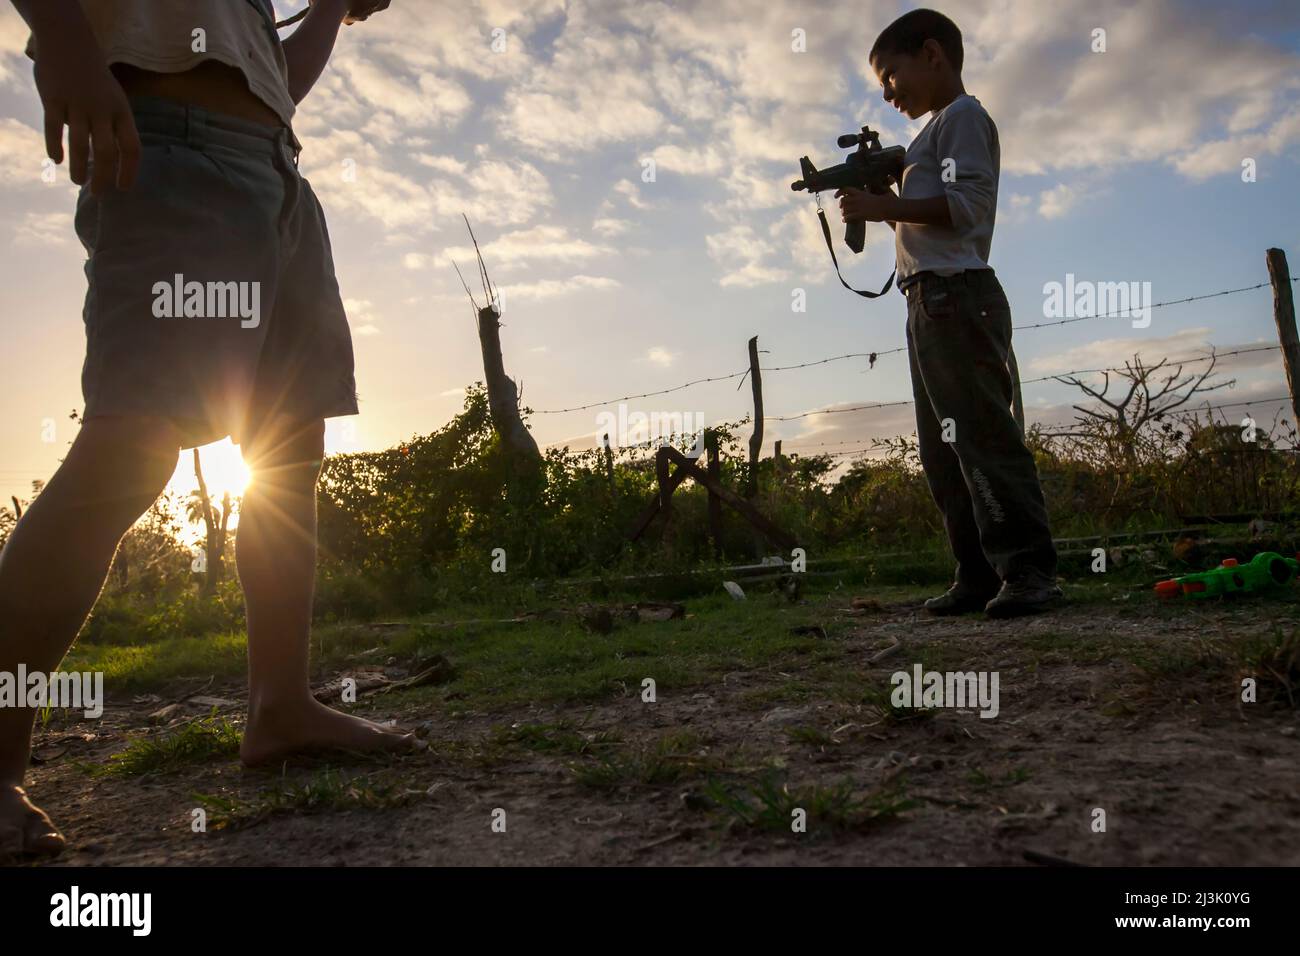 Wenn die Sonne hinter einem Stacheldrahtzaun untergeht, hält ein kleiner Junge eine Spielzeugpistole in der Hand: Cienfuegos, Kuba Stockfoto